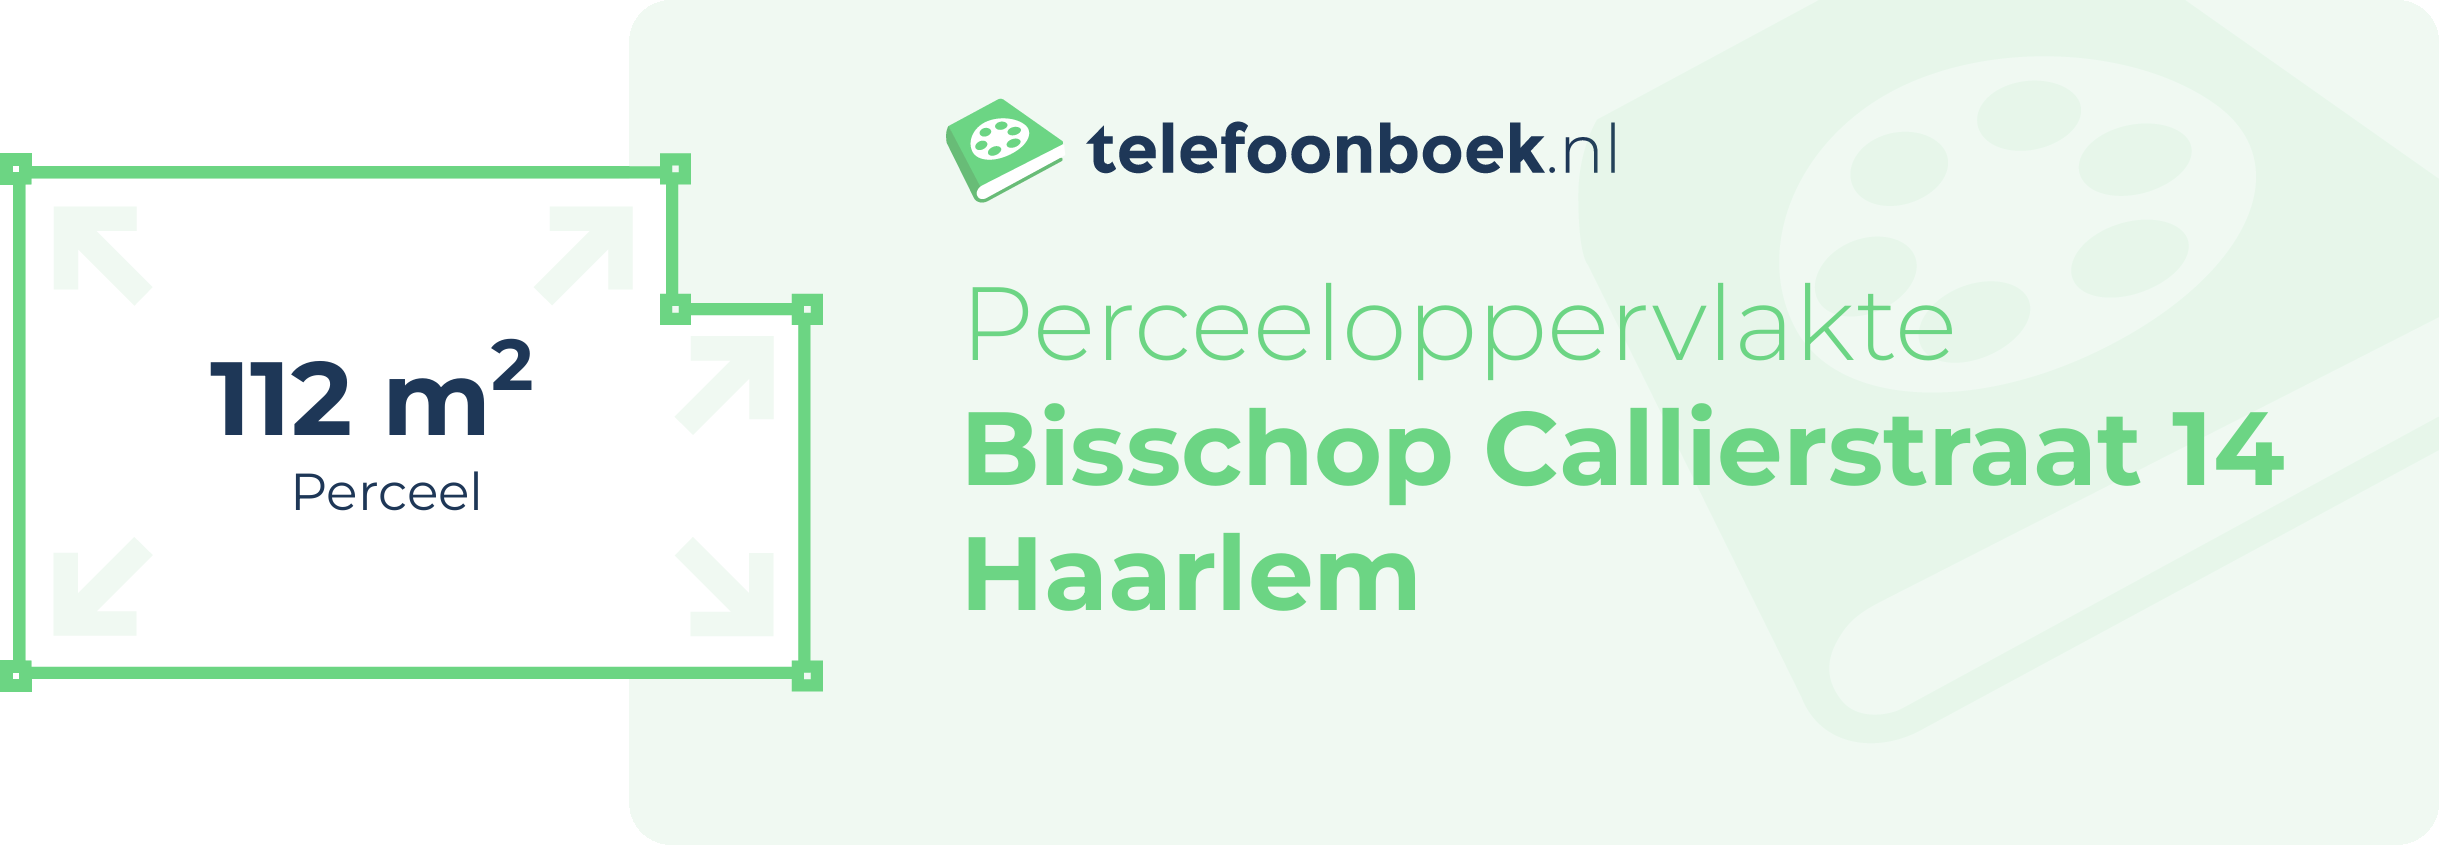 Perceeloppervlakte Bisschop Callierstraat 14 Haarlem